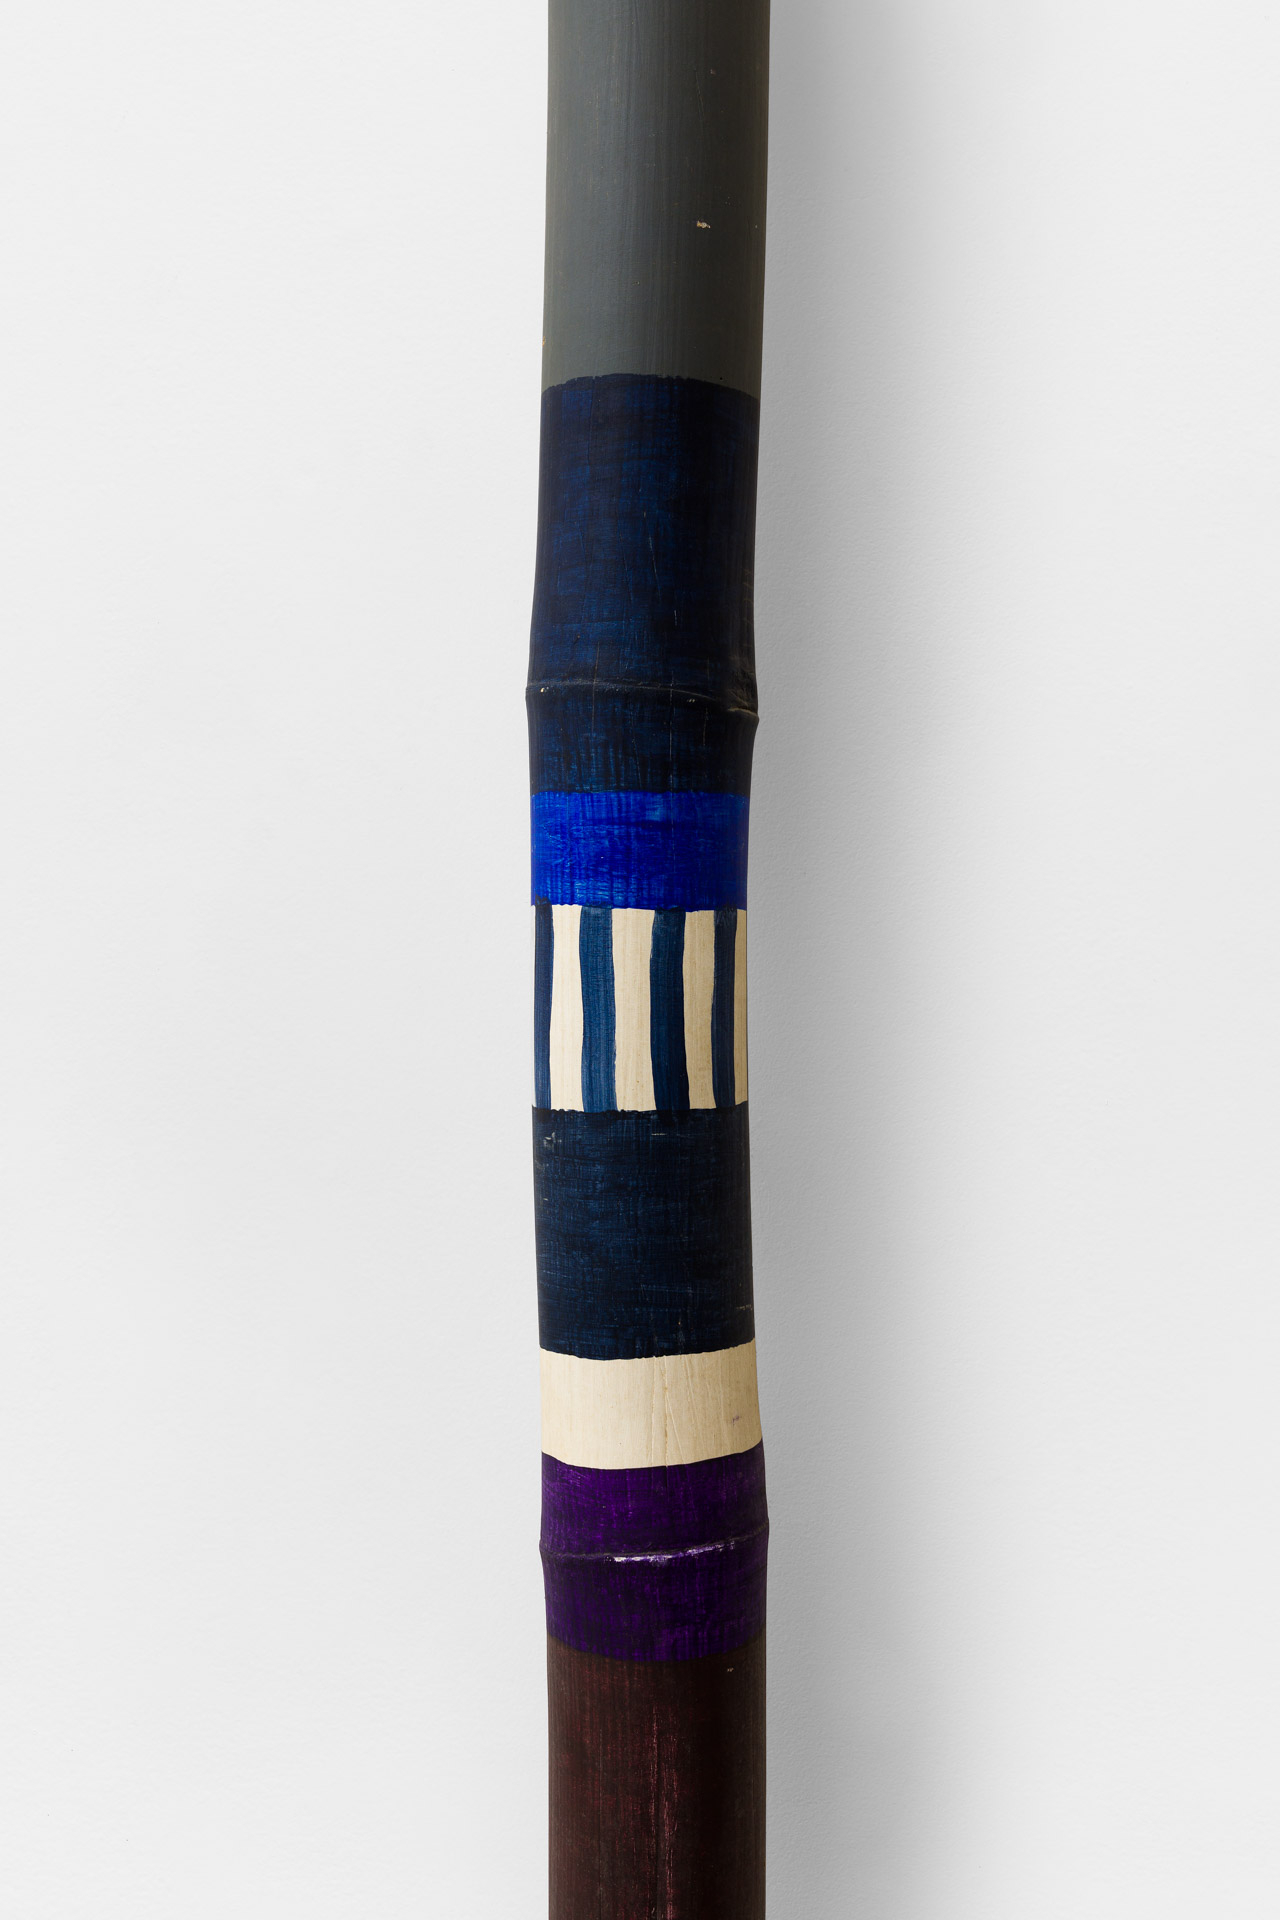 Ione Saldanha | Sem Título (Bambu), déc. 1960